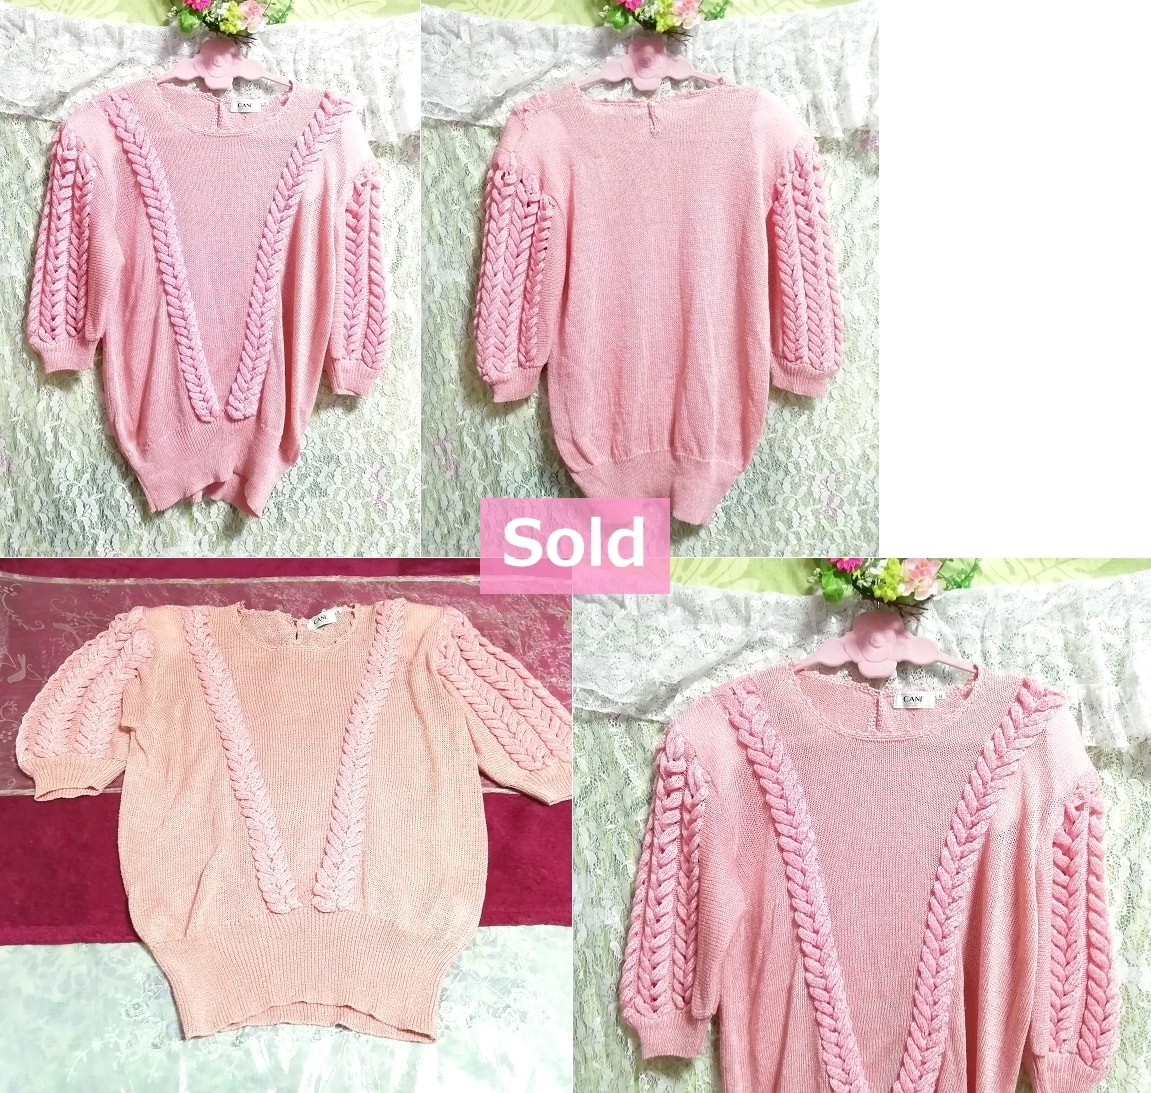 ピンク三つ編み装飾ニットセーター Pink braid decorative knit sweater, ニット、セーター&長袖&Mサイズ